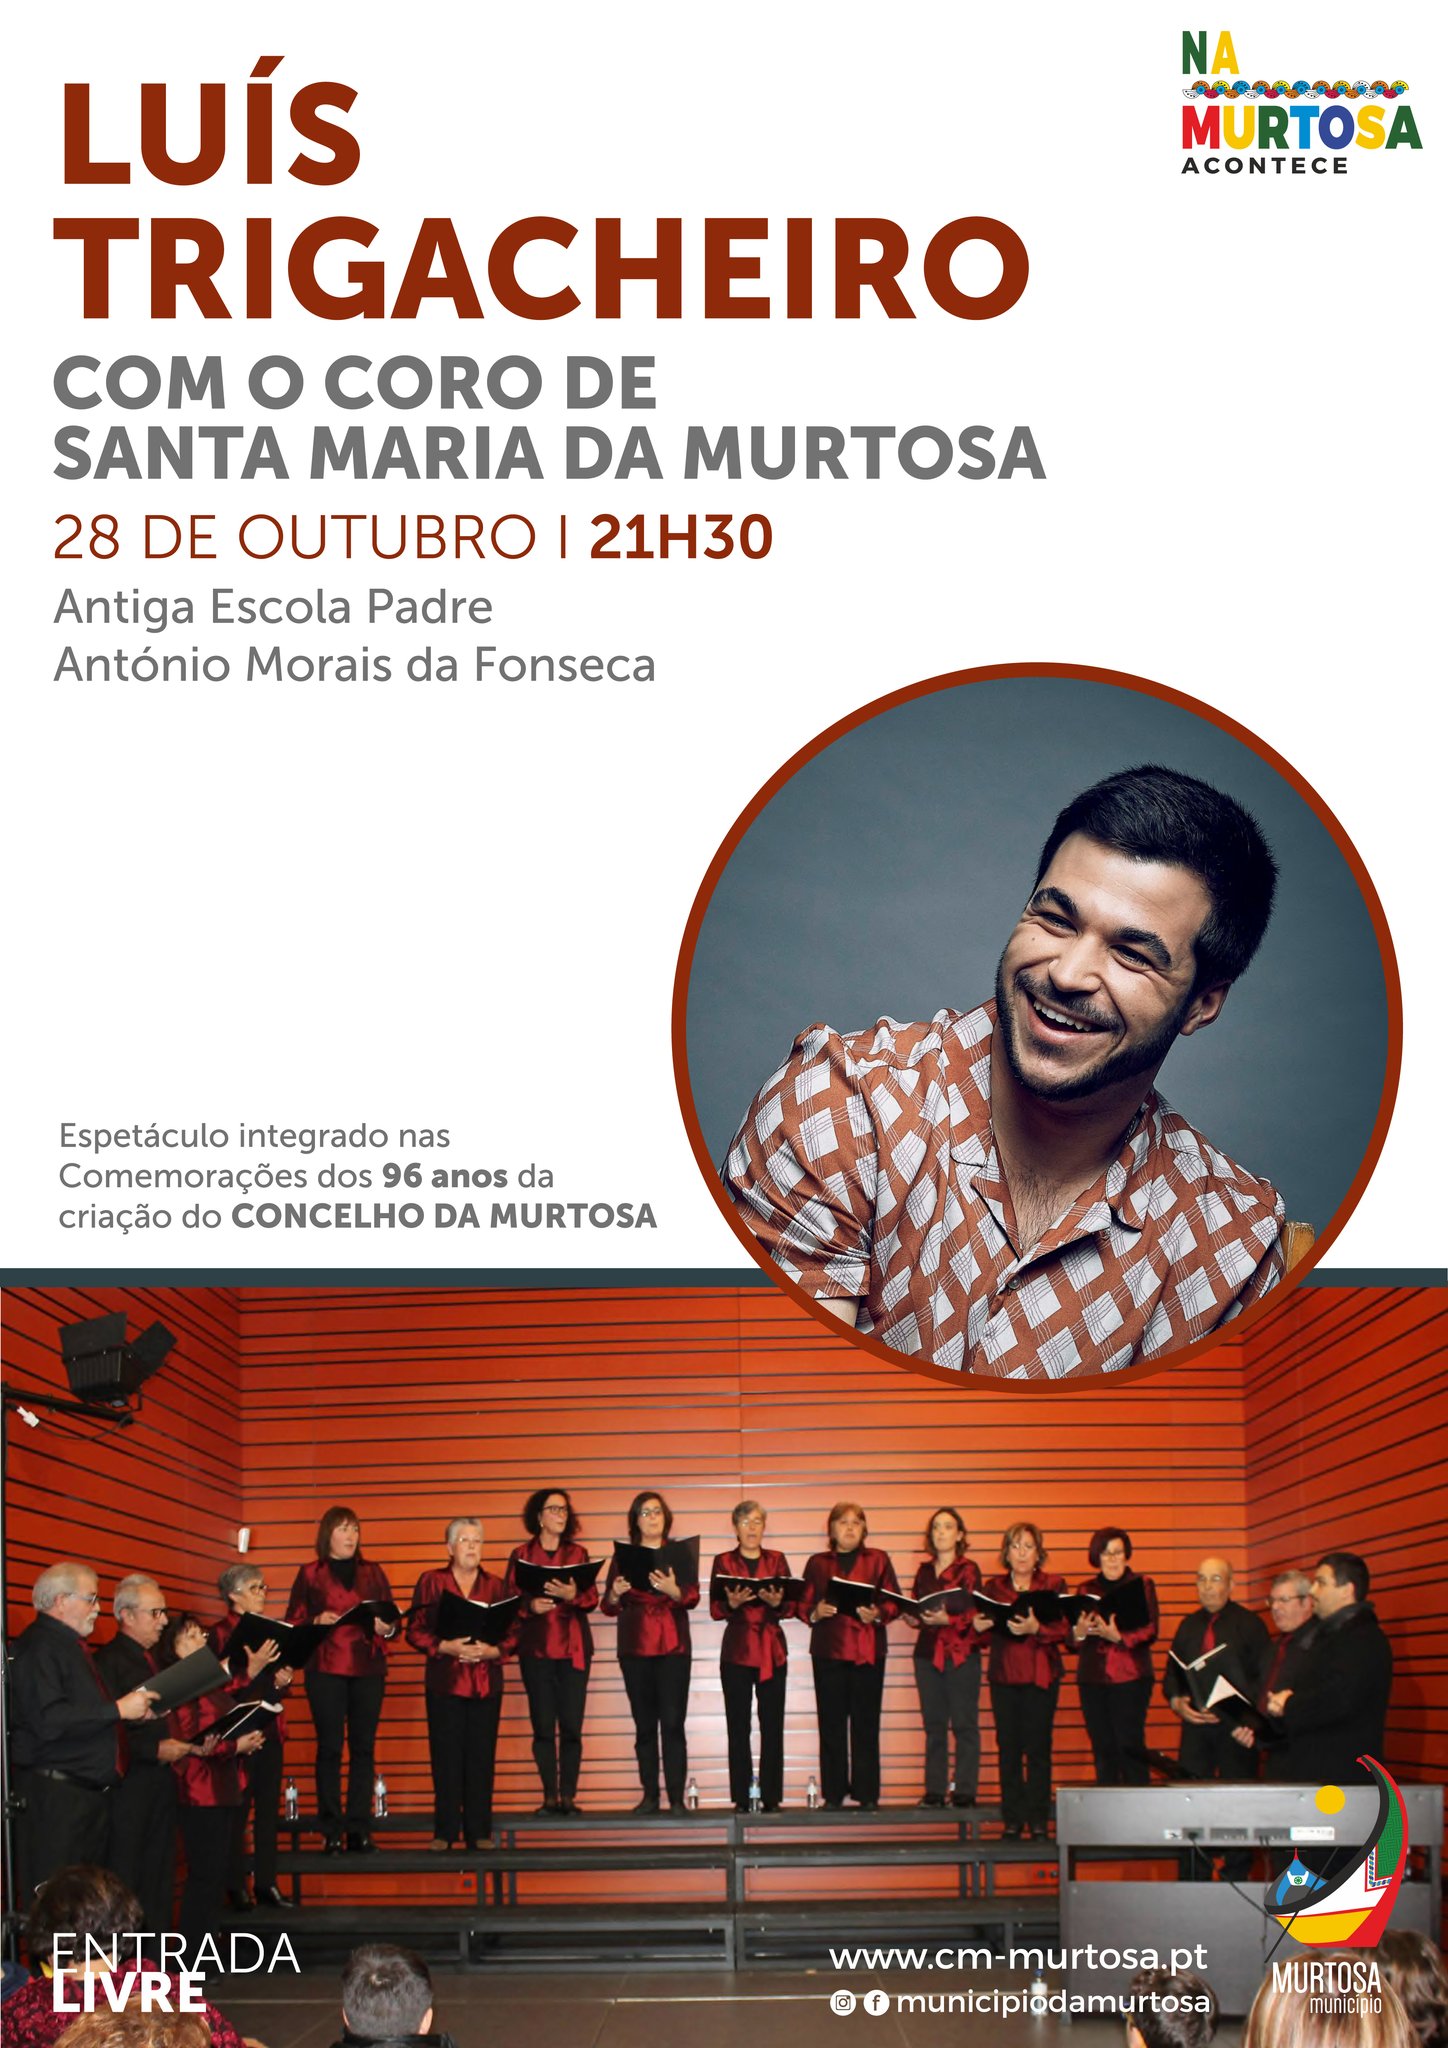 Concerto Luís Trigacheiro & Coro de Santa Maria da Murtosa